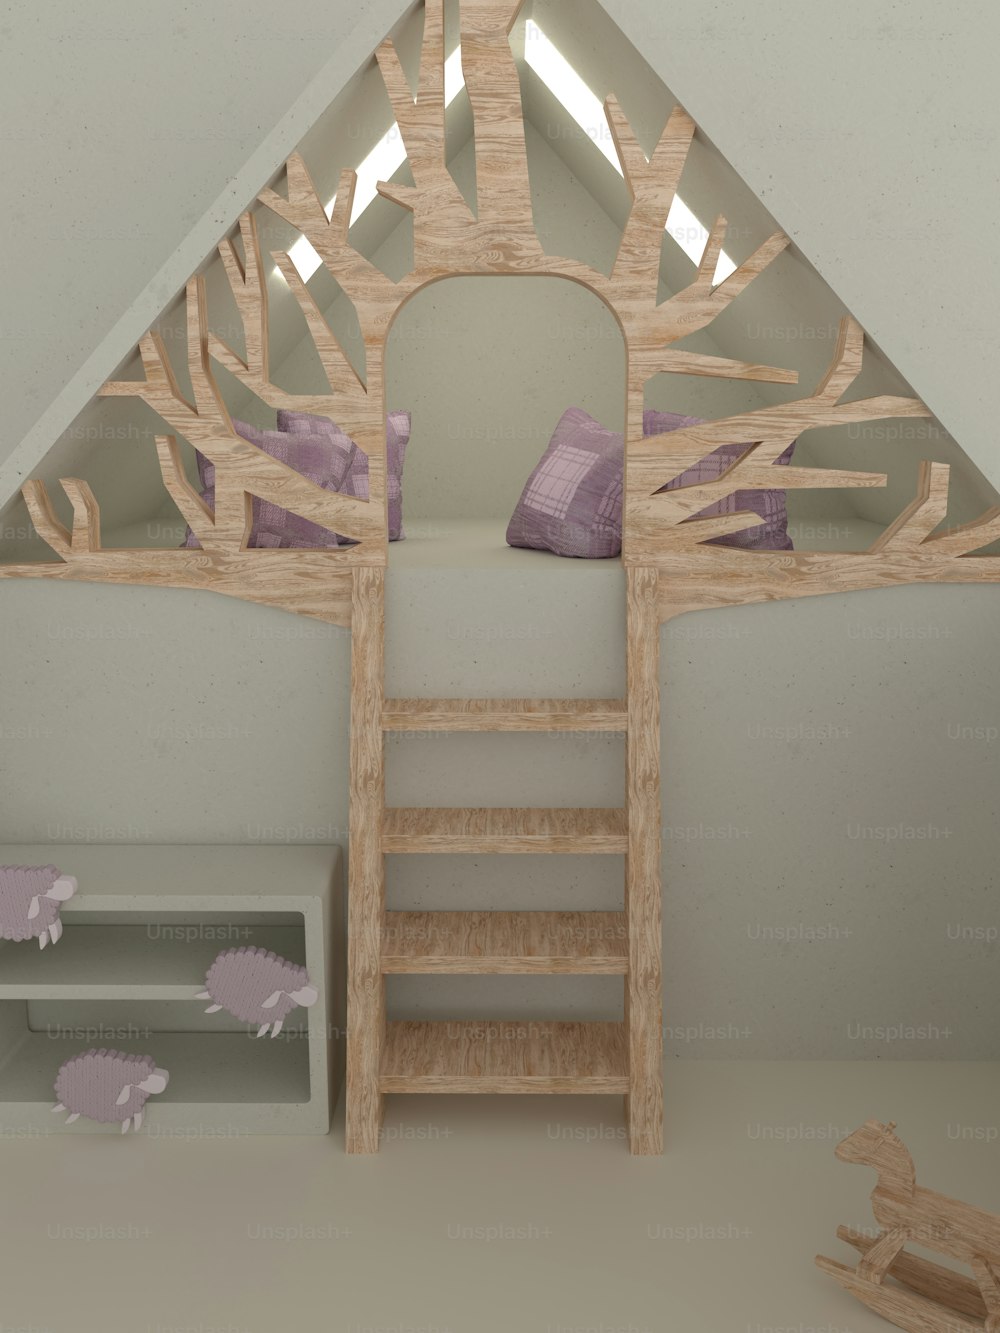 una habitación con una escalera y una cama en ella